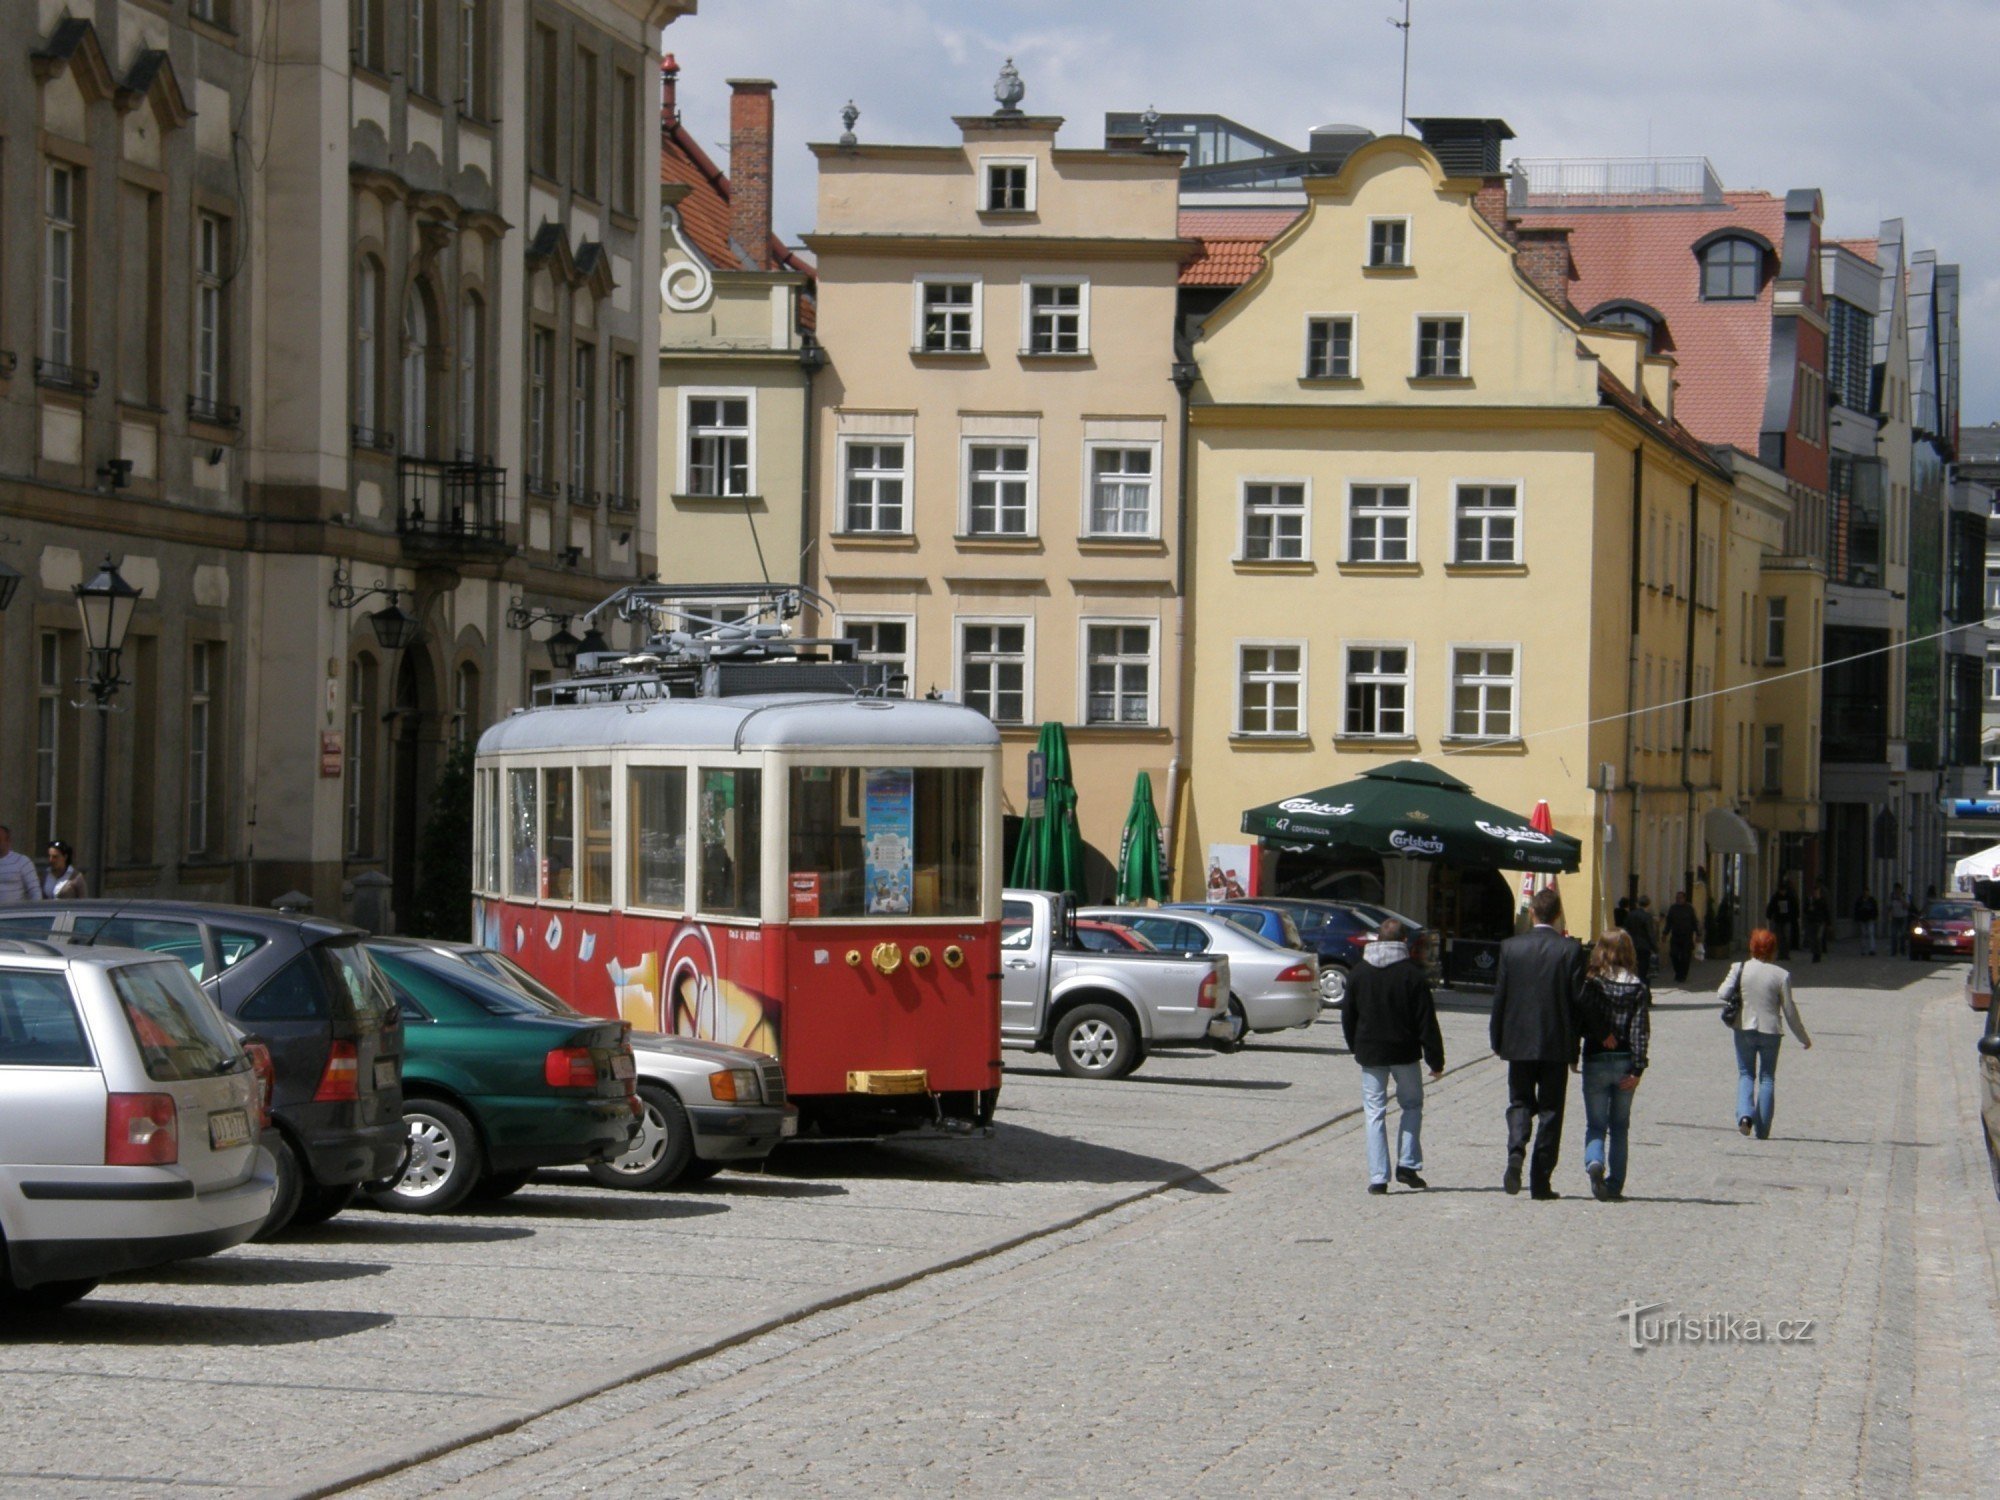 Die Straßenbahnen in J.Góra endeten um 8O. Jahre des letzten Jahrhunderts